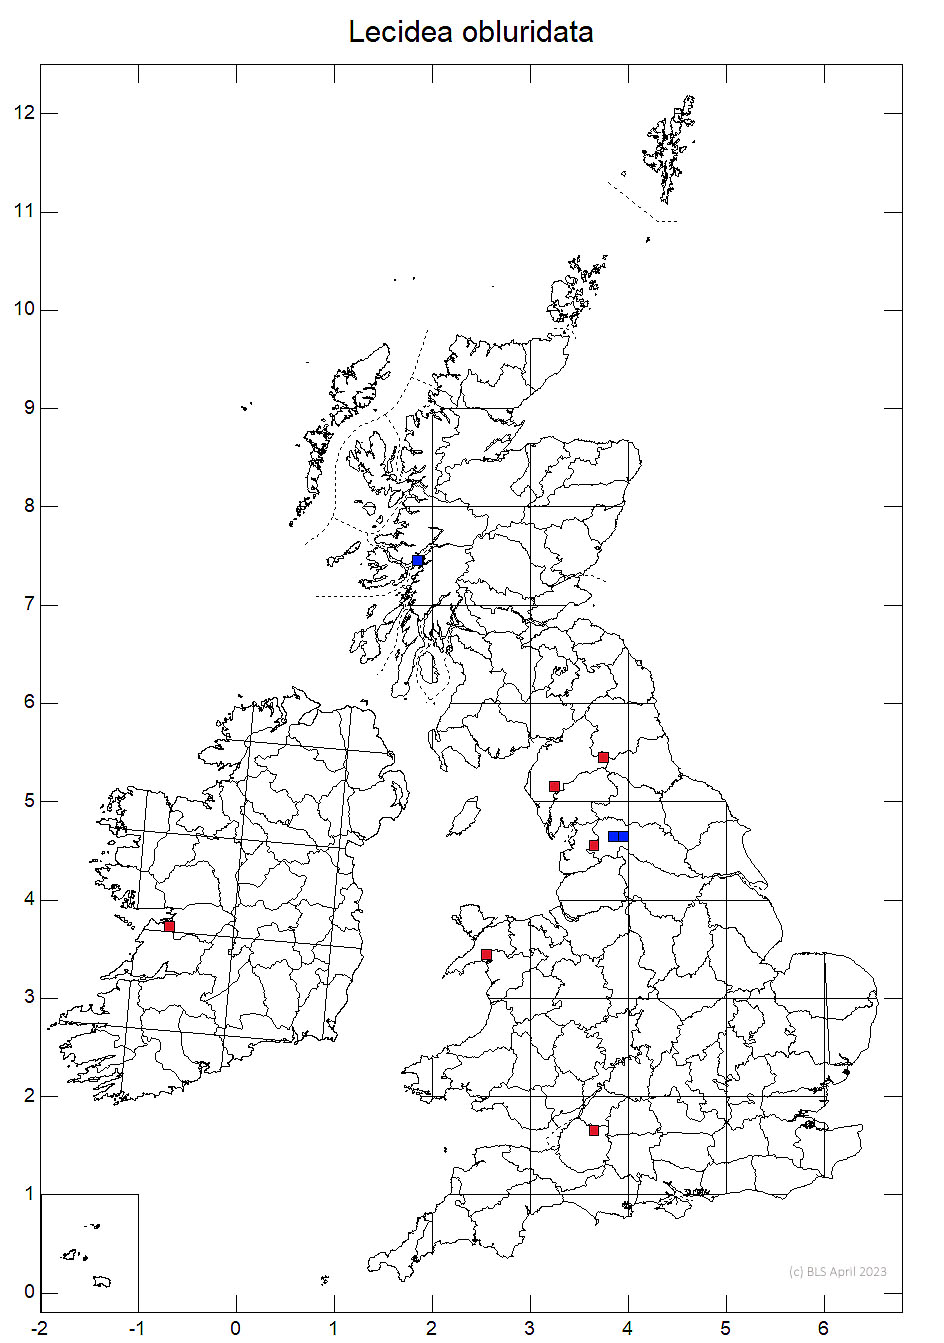 Lecidea obluridata 10km sq distribution map